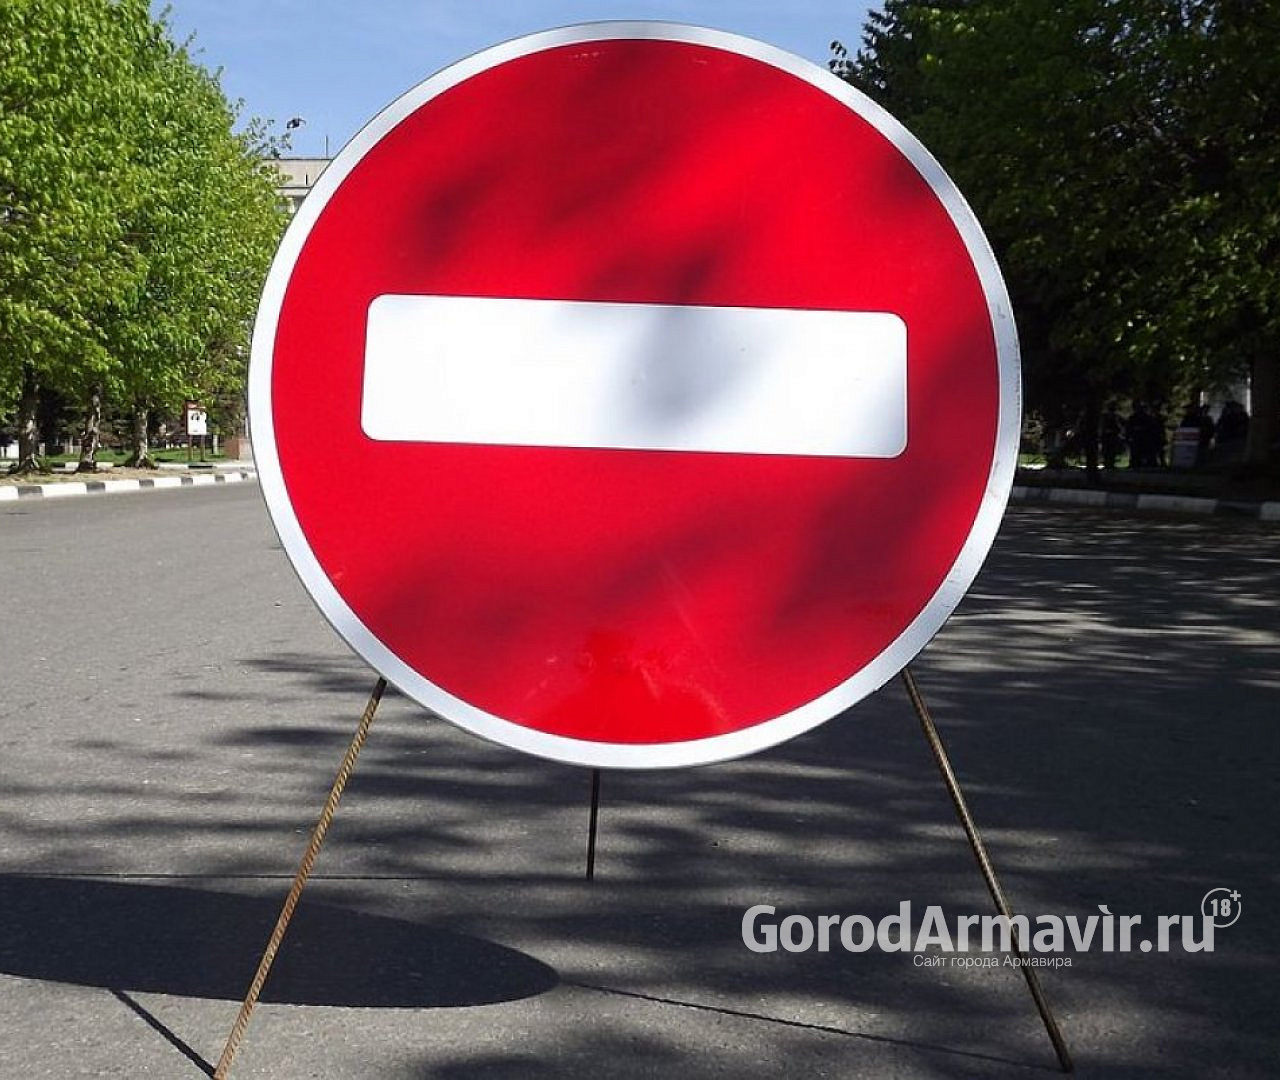 В Армавире из-за ремонта будет закрыто движение по улице Ефремова 